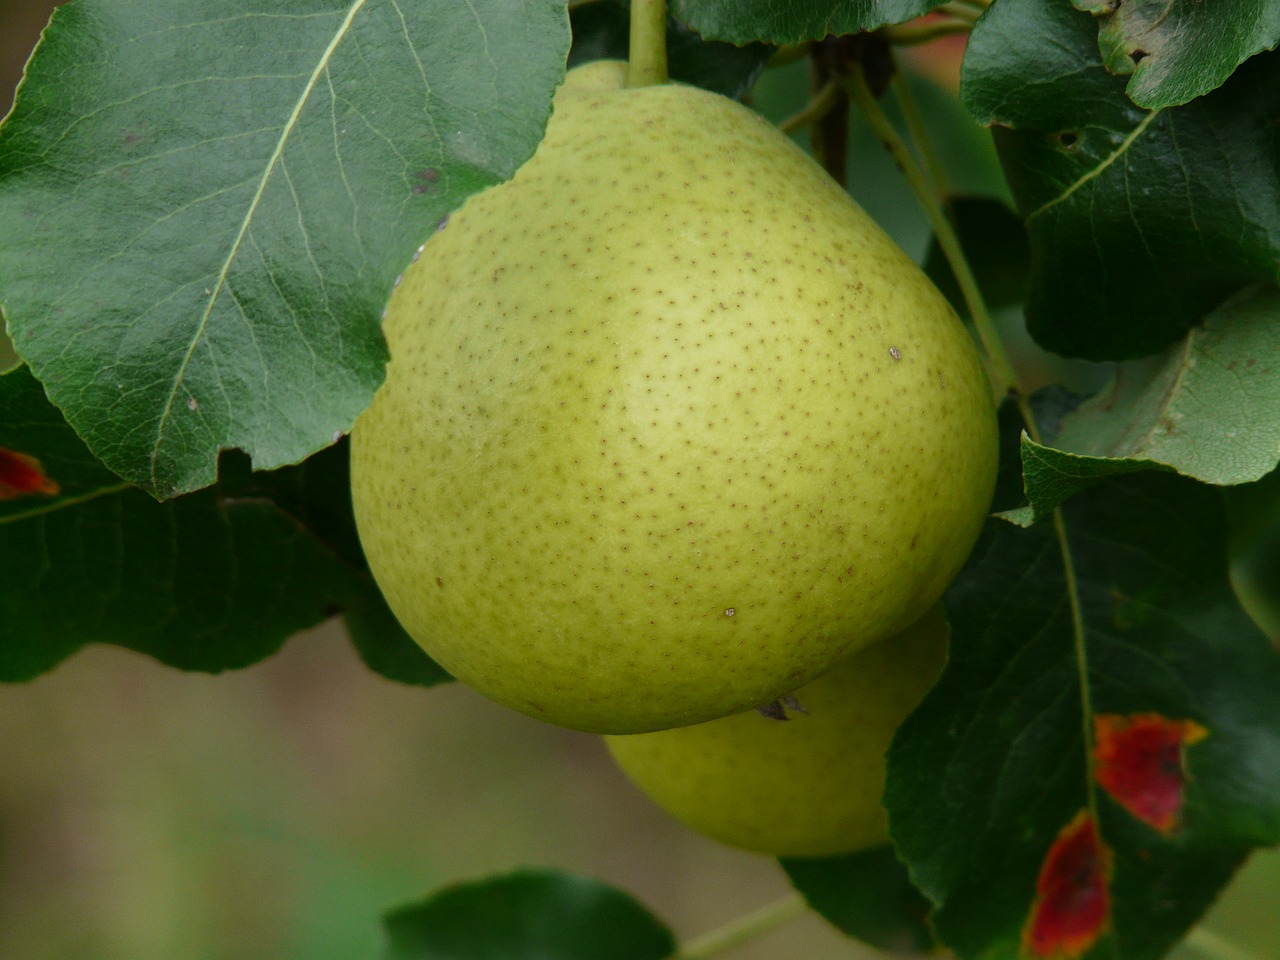 Pear Strudel